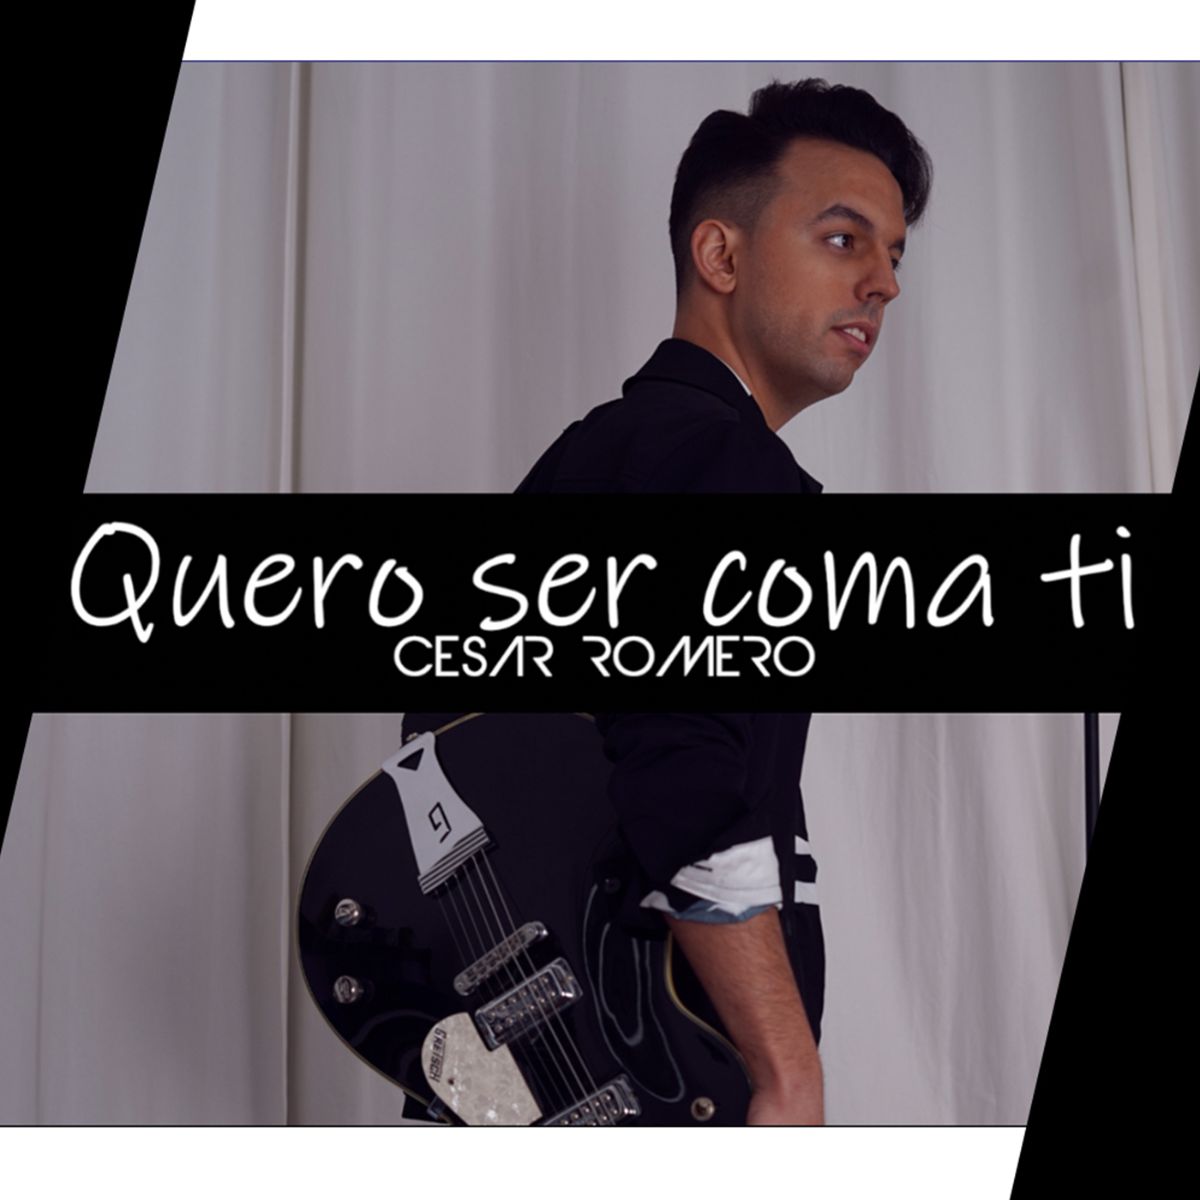 Nuevo Single 'Quero ser coma ti' - César Romero x Down Galicia